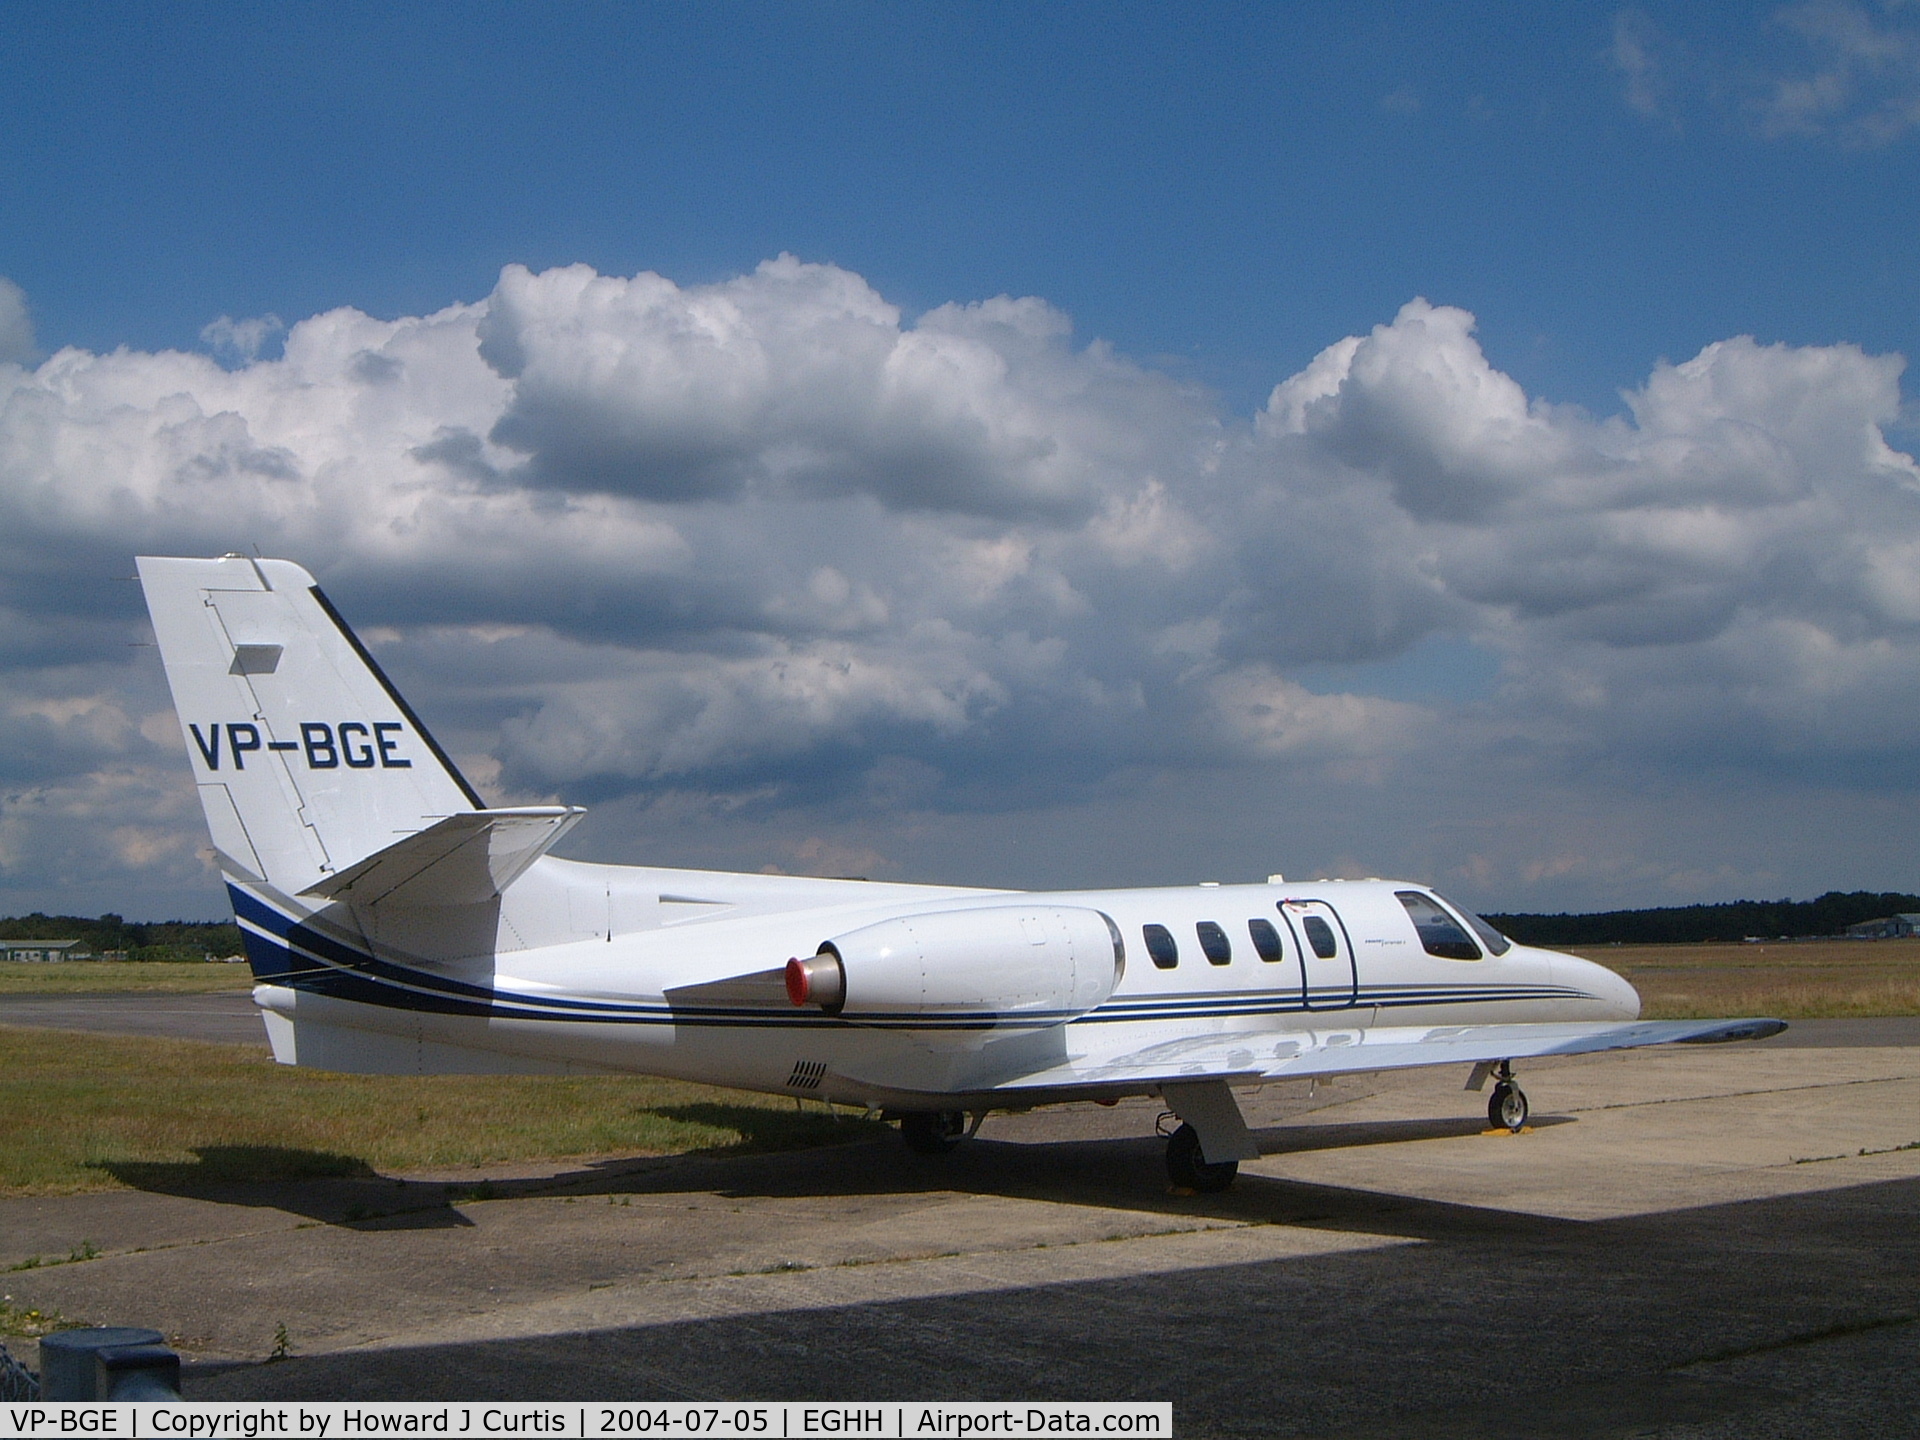 VP-BGE, 1975 Cessna 500 Citation I C/N 500-0287, Destroyed in a fatal crash on 30th March 2008.